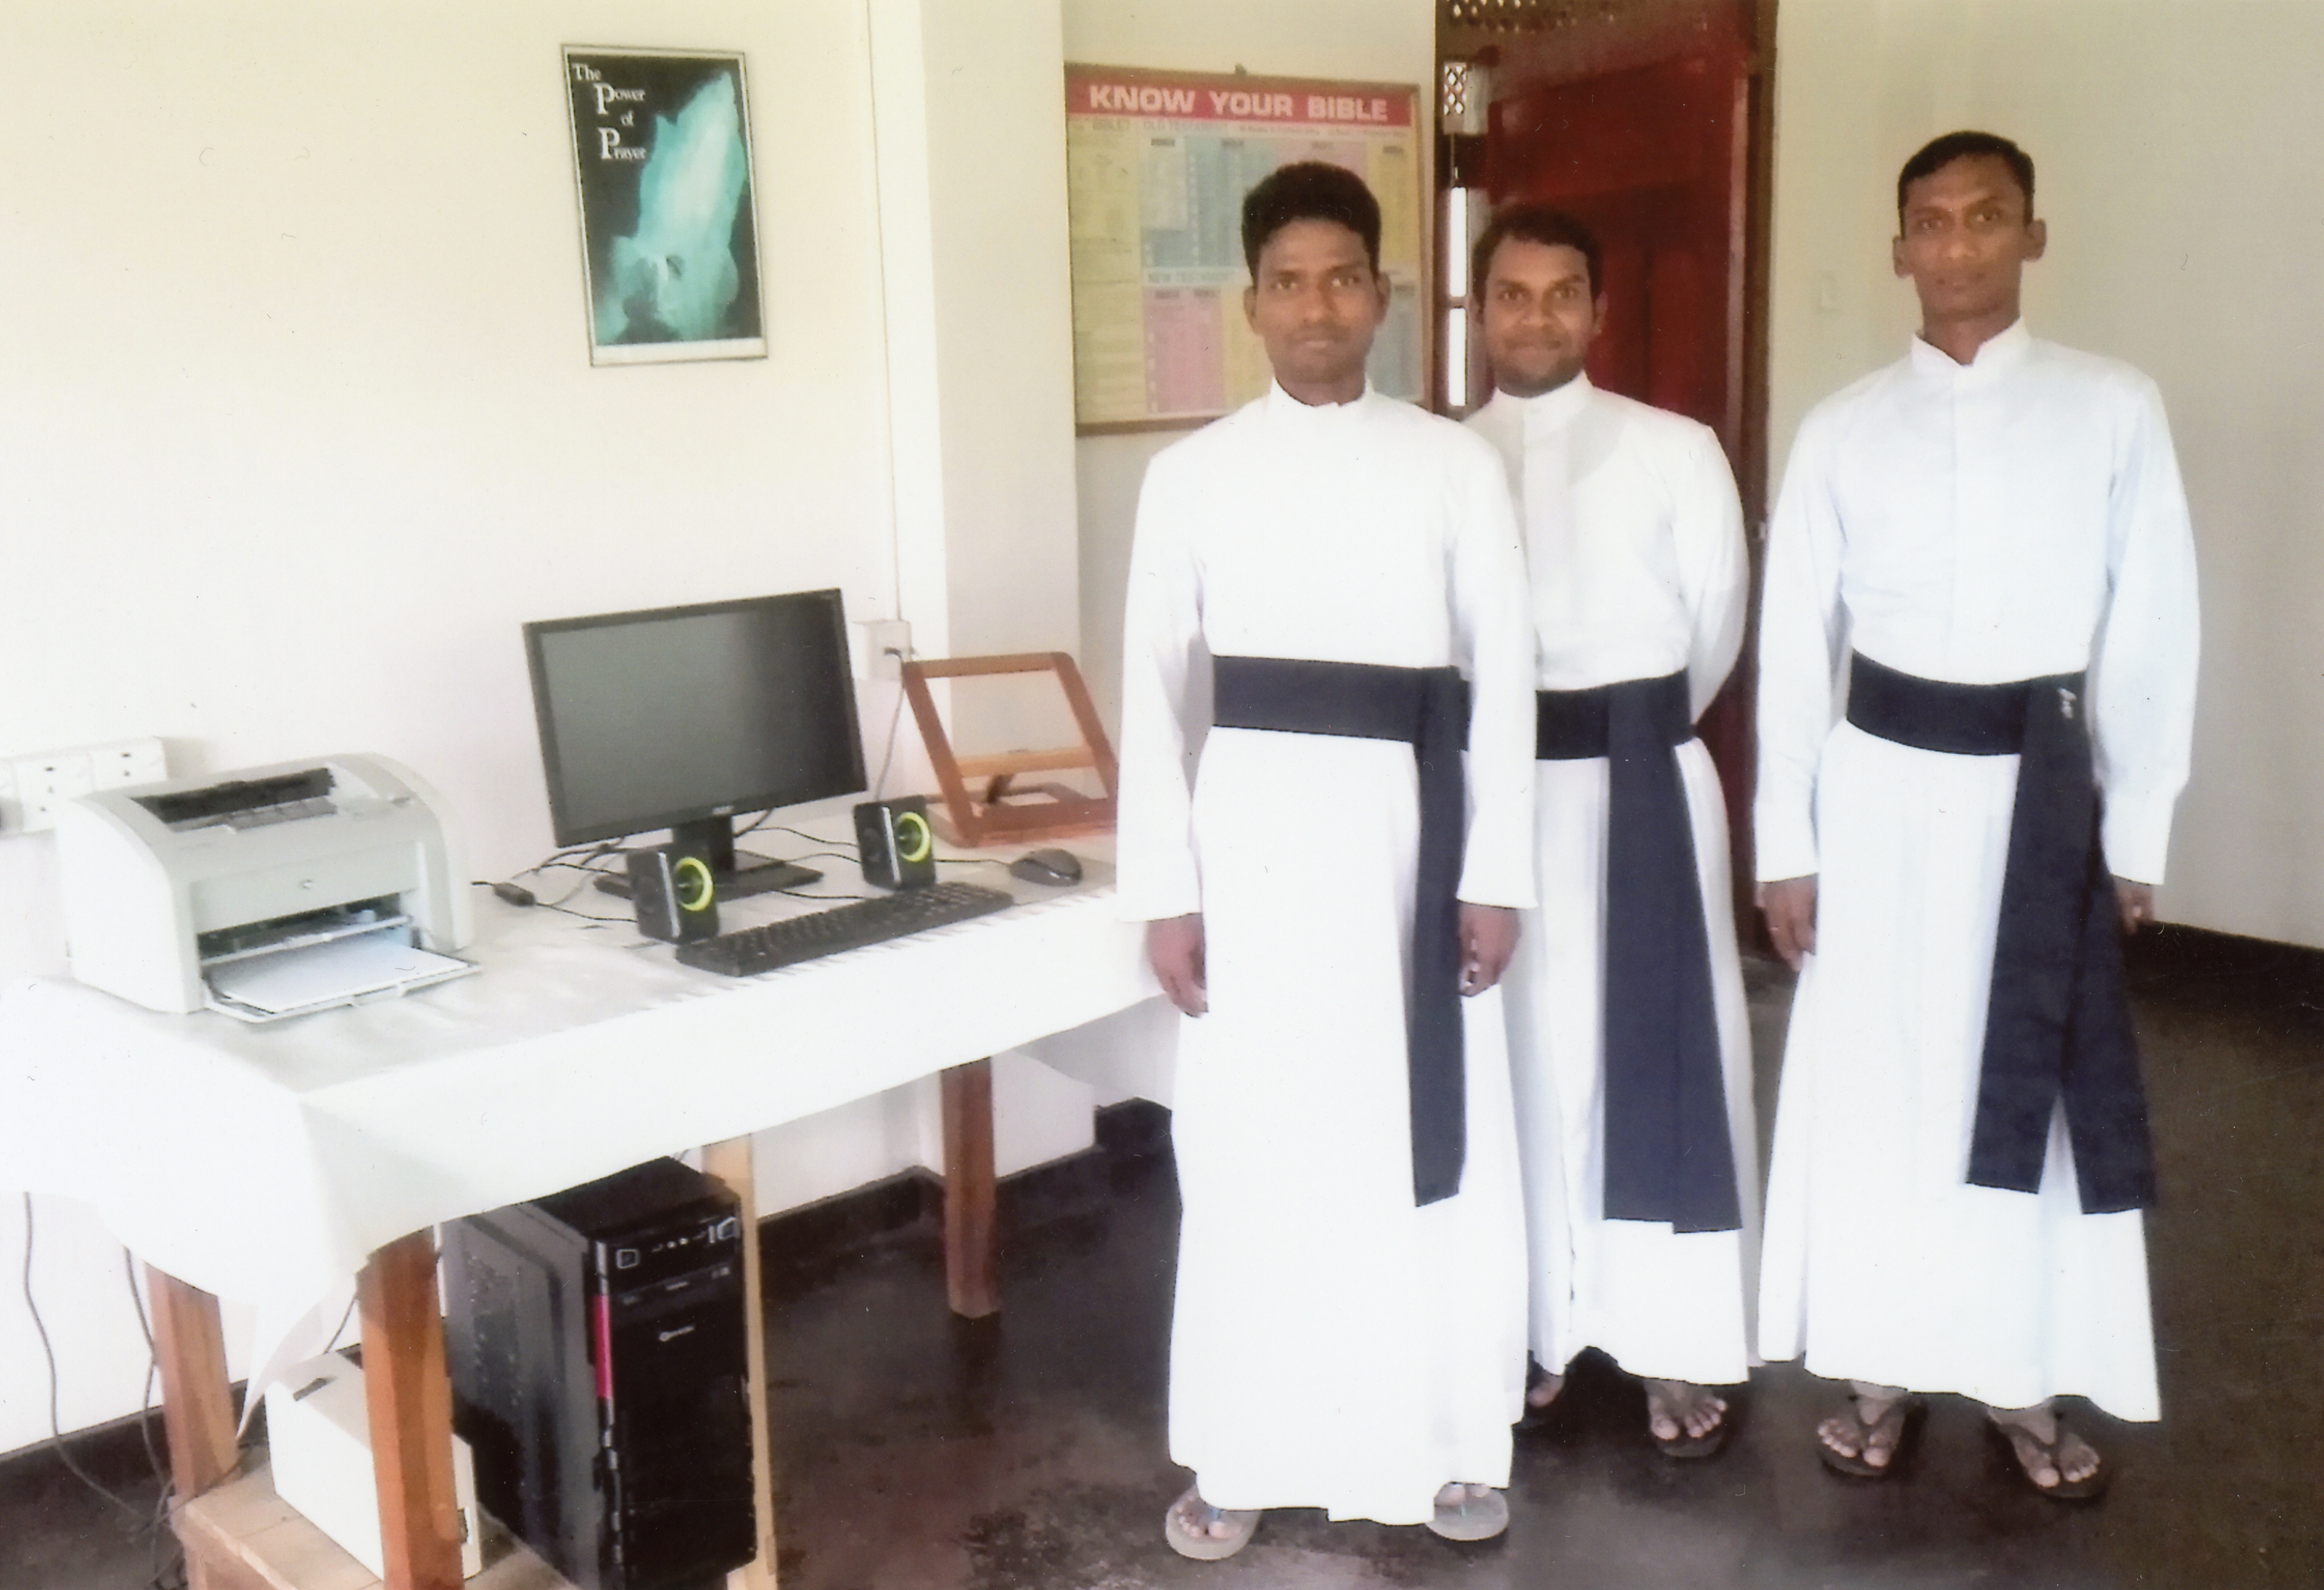 Proyecto: 29 religiosos en Sri Lanka pueden continuar con su labor gracias a los estipendios de misa